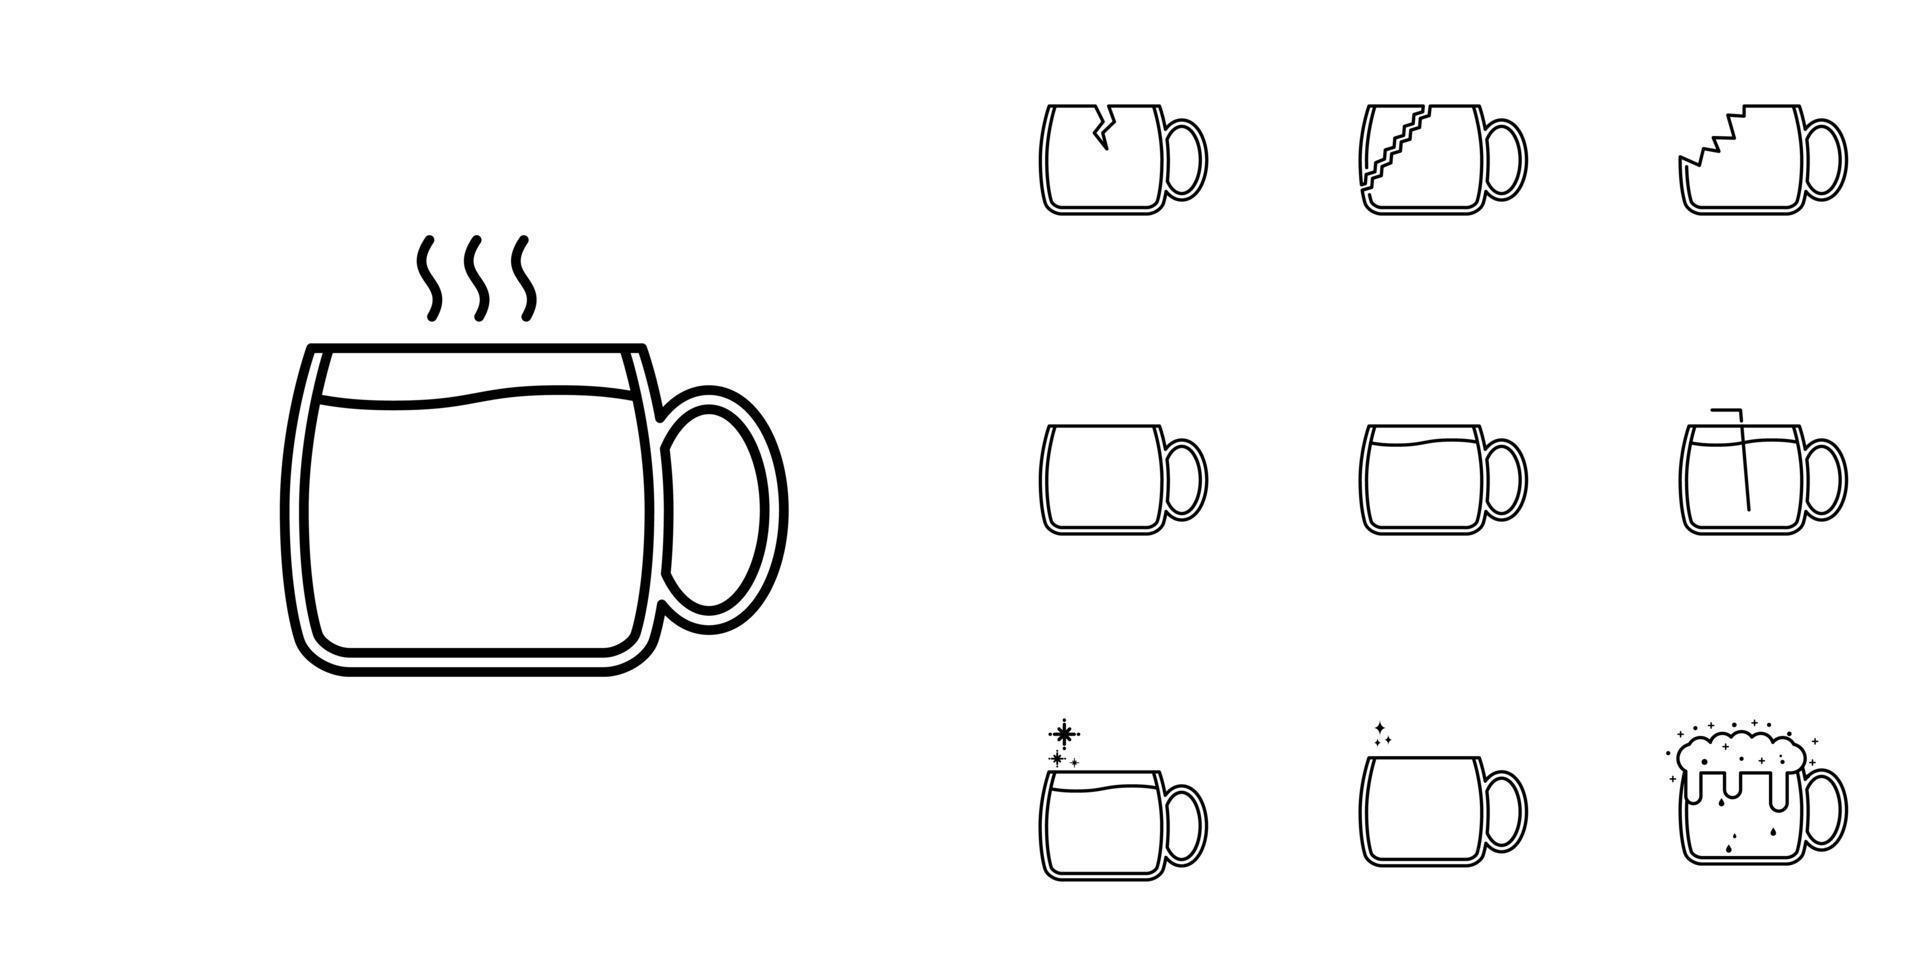 dieci imposta di tè o caffè boccale tazza bicchiere linea icone. con un' cannuccia, caldo acqua, bibita e schiuma. semplice, linea, silhouette e pulito stile. nero e bianca. adatto per simboli, segni, icone o loghi vettore